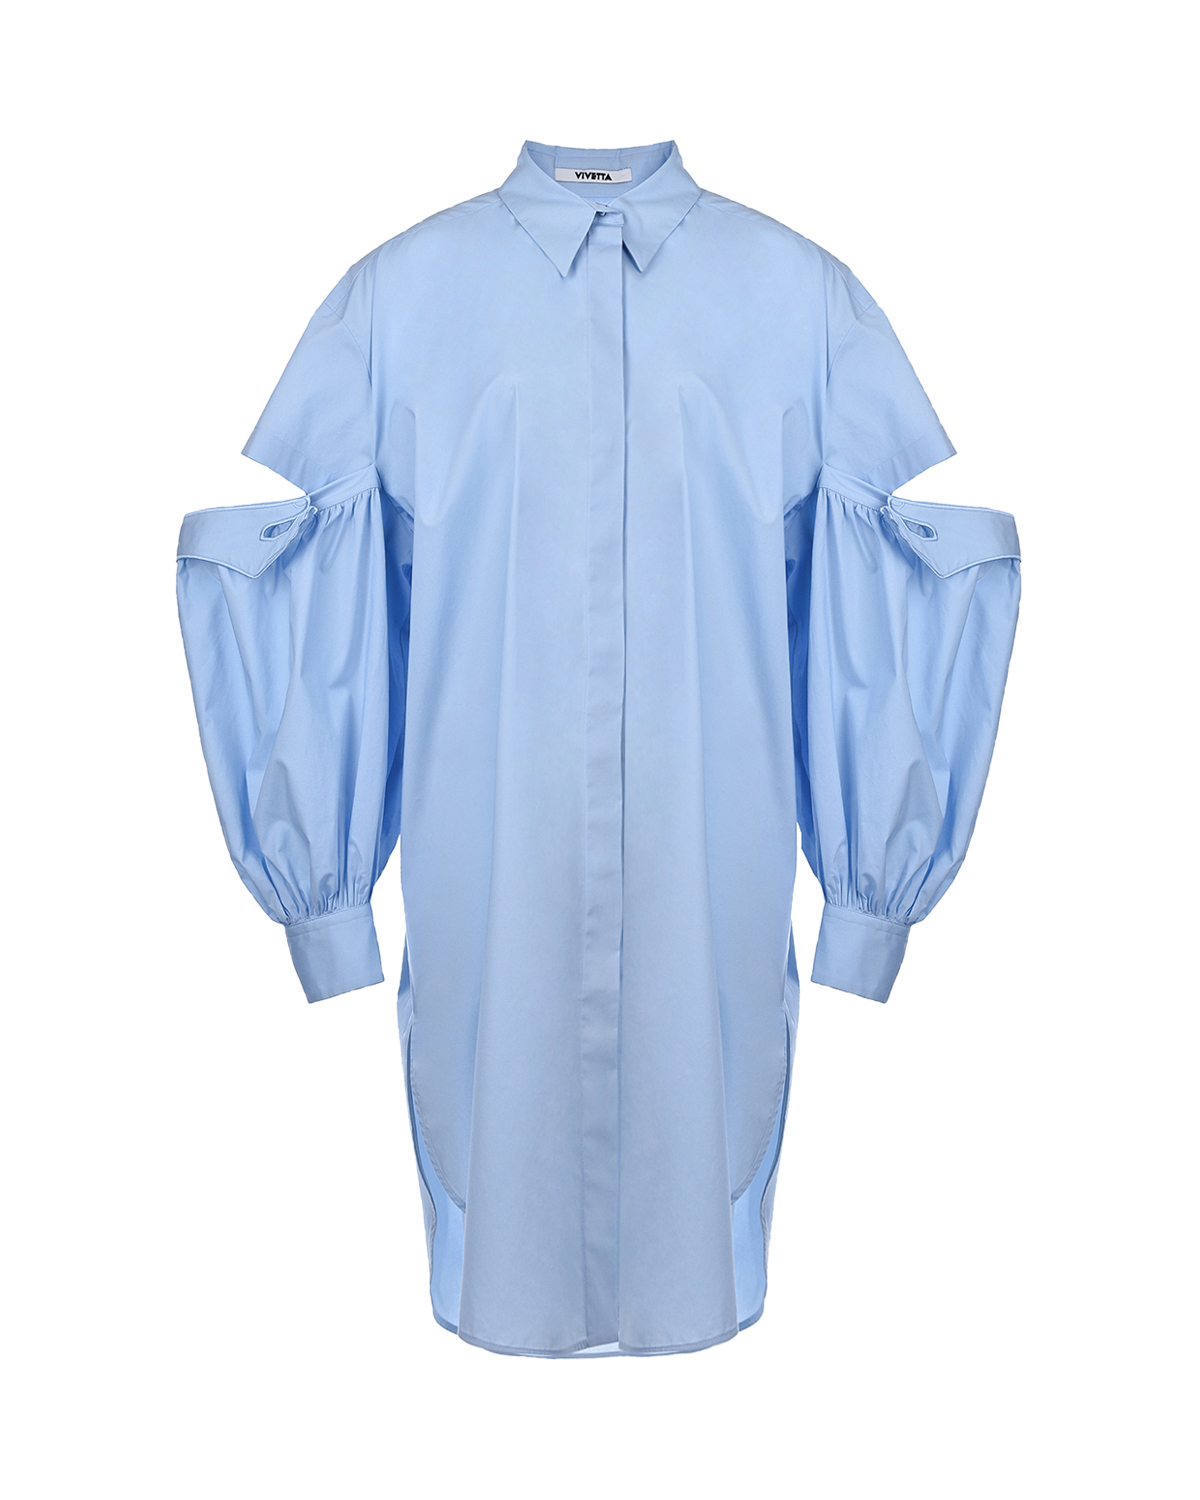 Голубое платье с разрезами на рукавах Vivetta, размер 40, цвет голубой - фото 1